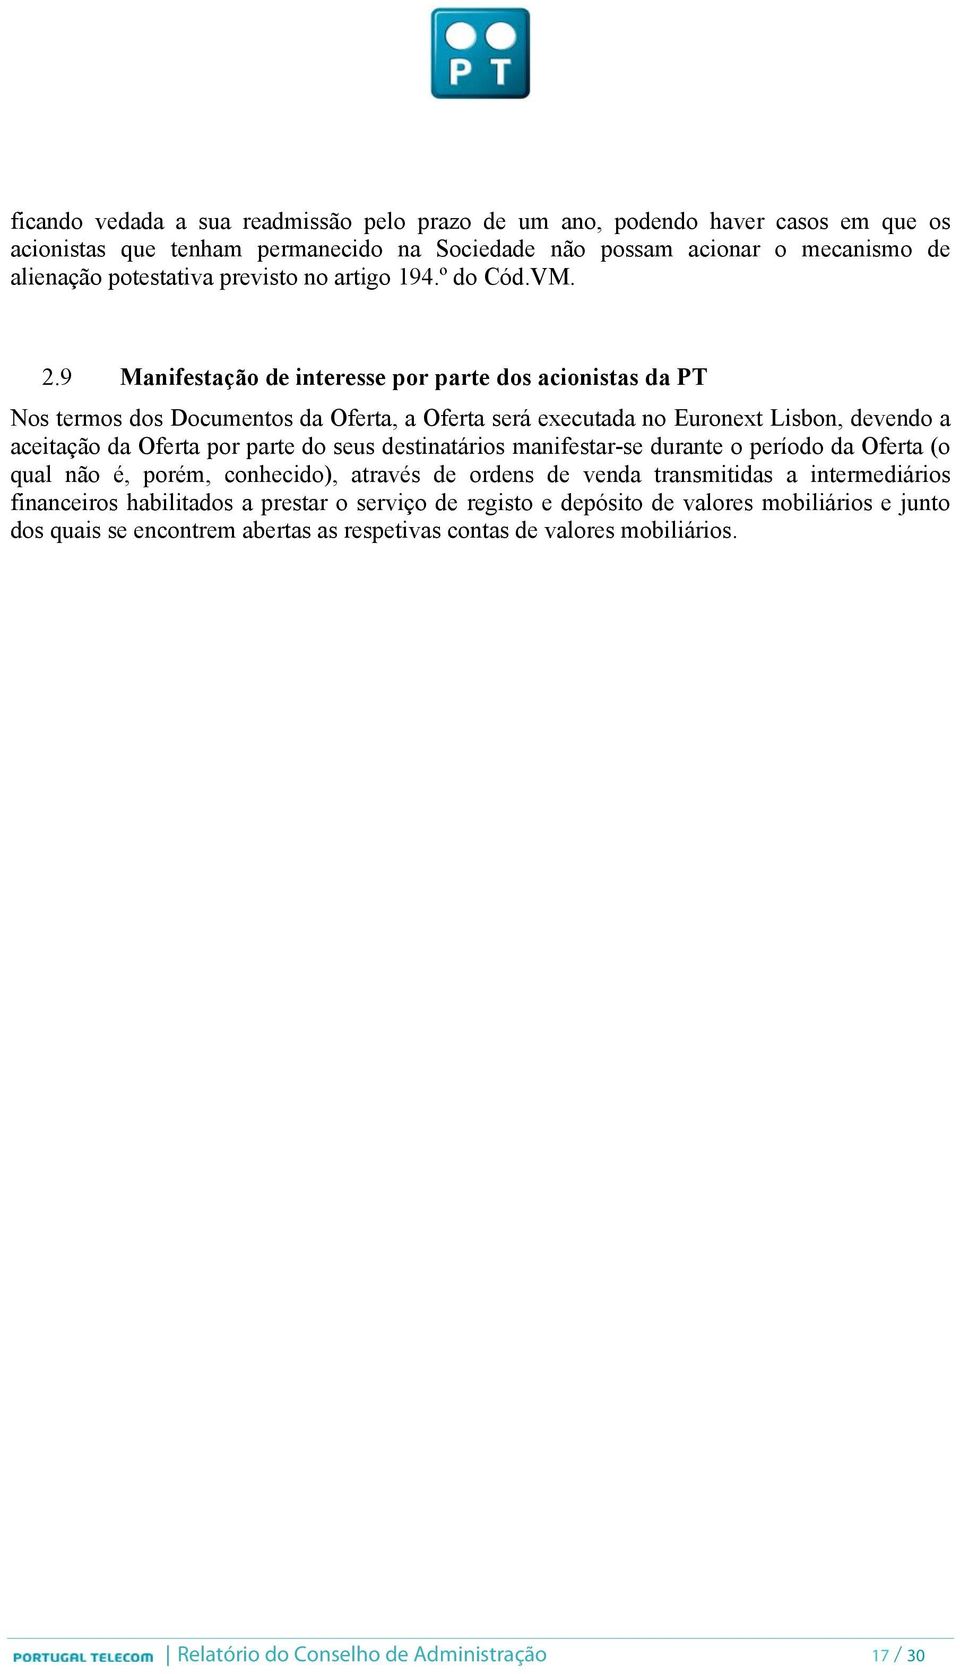 9 Manifestação de interesse por parte dos acionistas da PT Nos termos dos Documentos da Oferta, a Oferta será executada no Euronext Lisbon, devendo a aceitação da Oferta por parte do seus